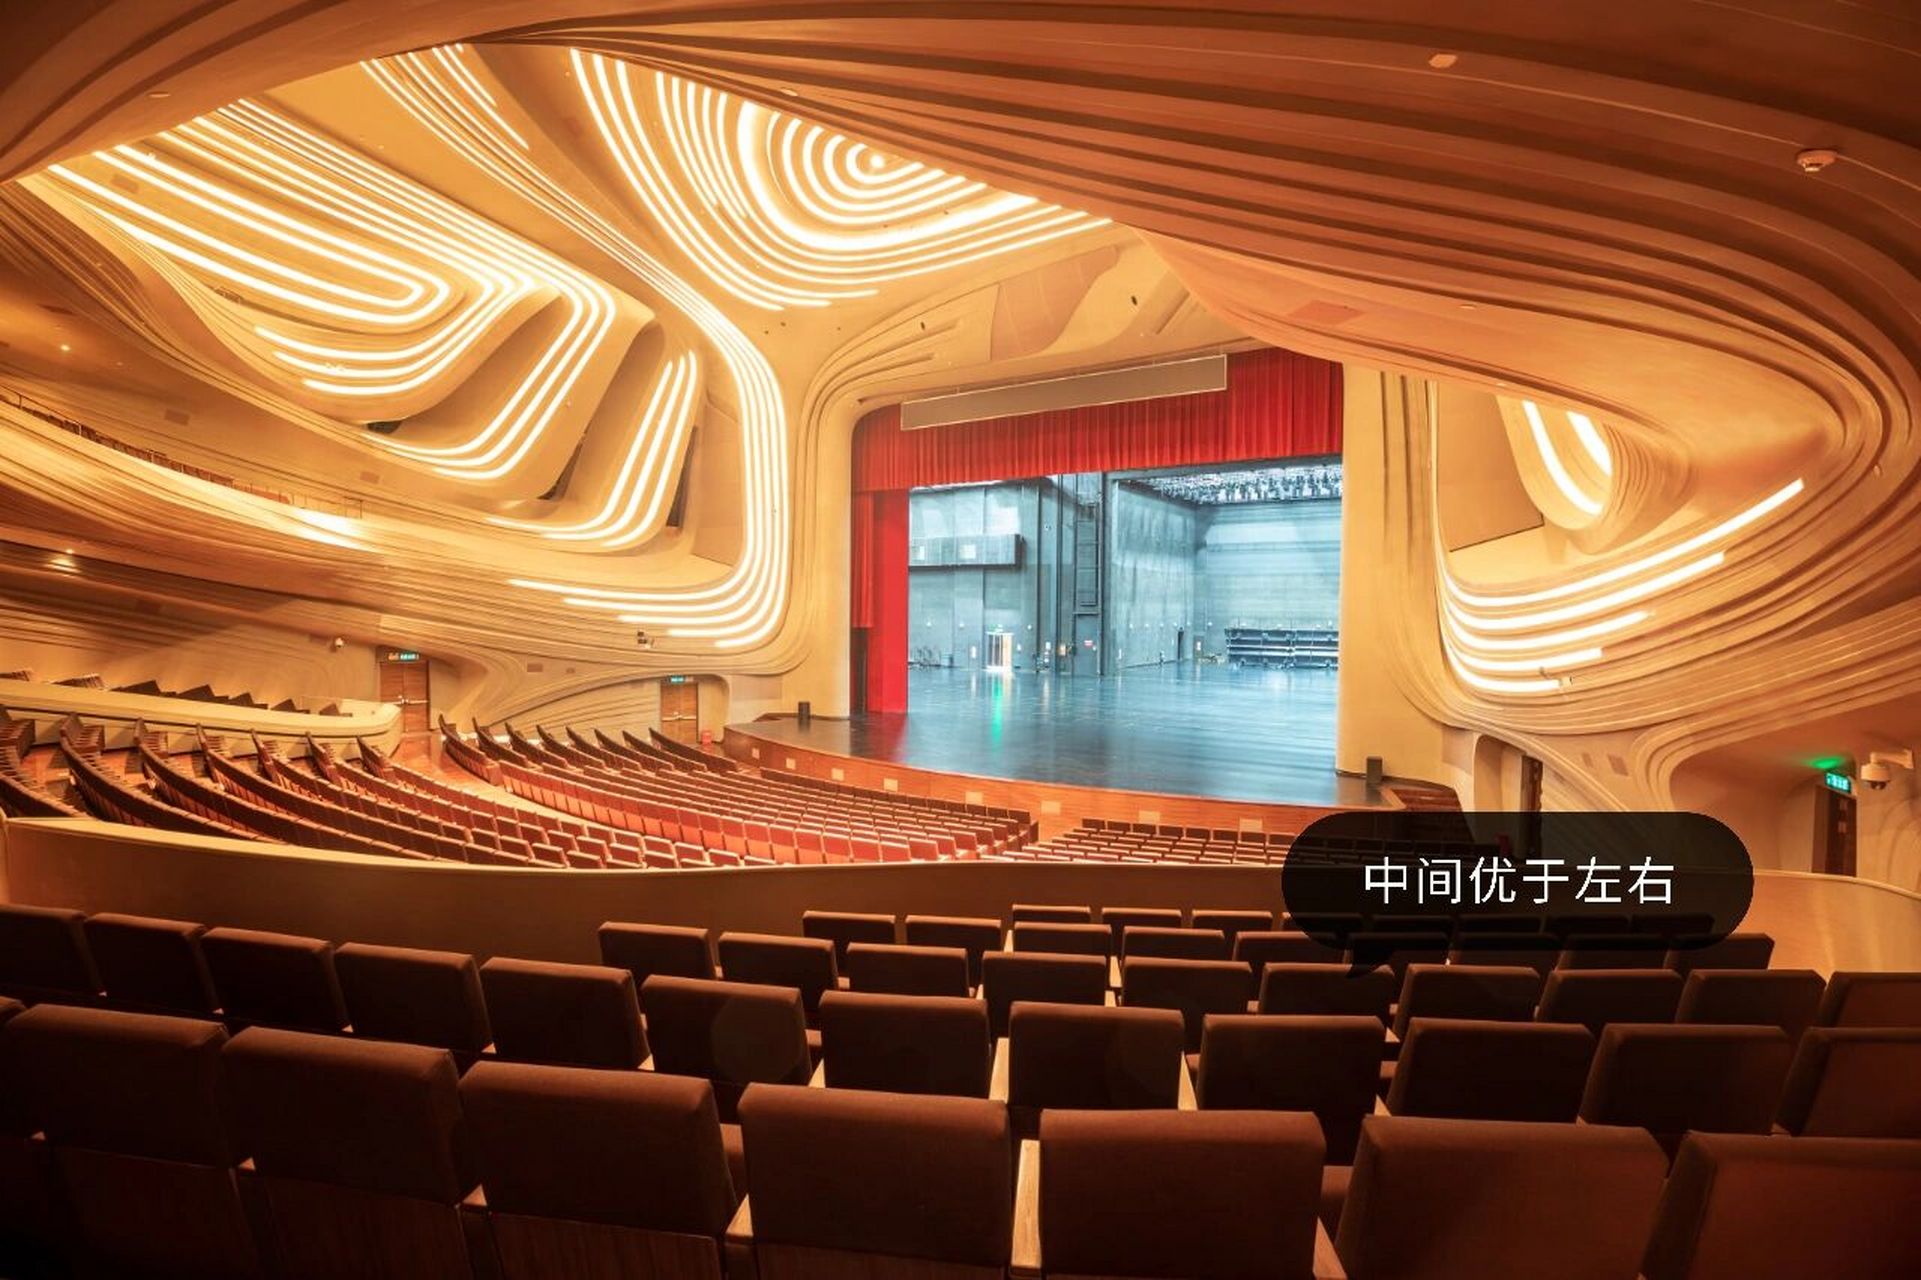 梅溪湖国际文化艺术中心大剧院有三层,共有1811个座位,一层座位1196个